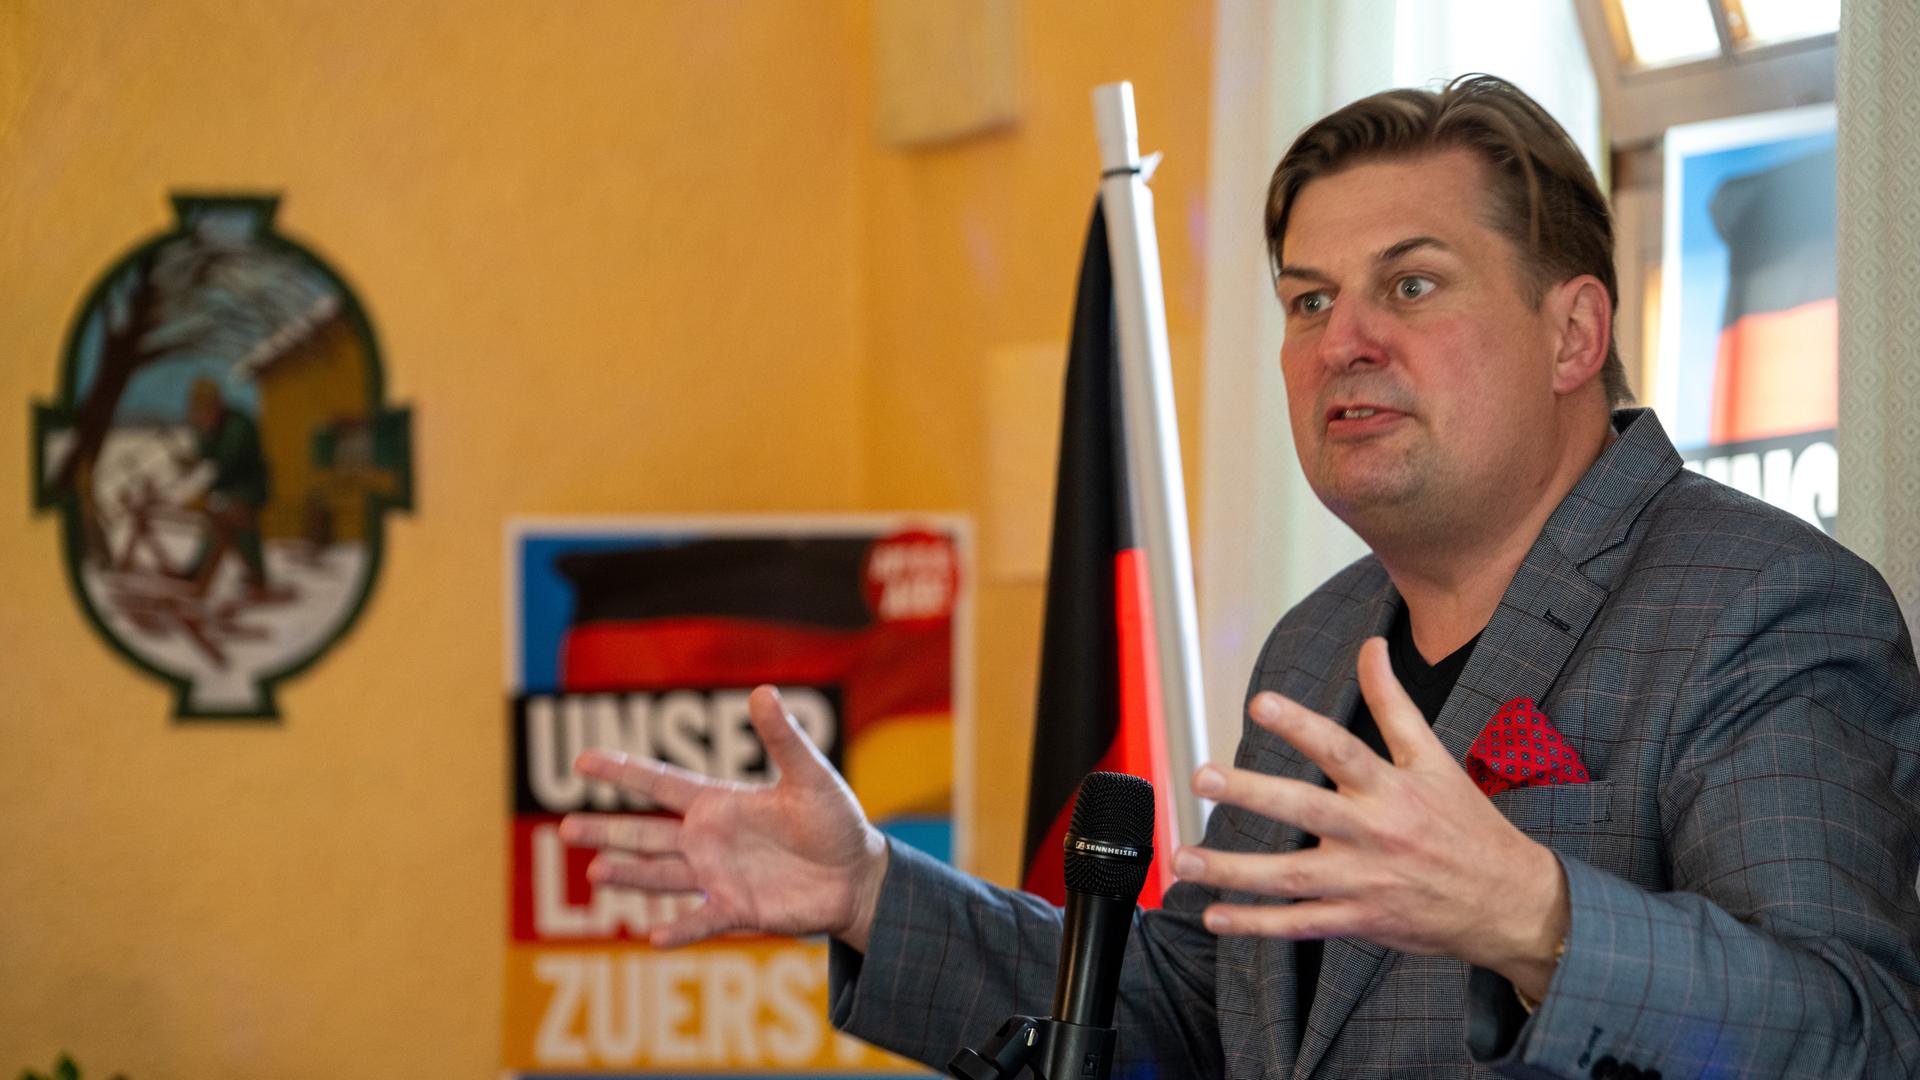 Krah spricht und gestikuliert mit beiden Händen in einem Raum. Im Hintergrund sind eine Deutschland-Fahne und ein AfD-Wahlplakat zu erkennen.